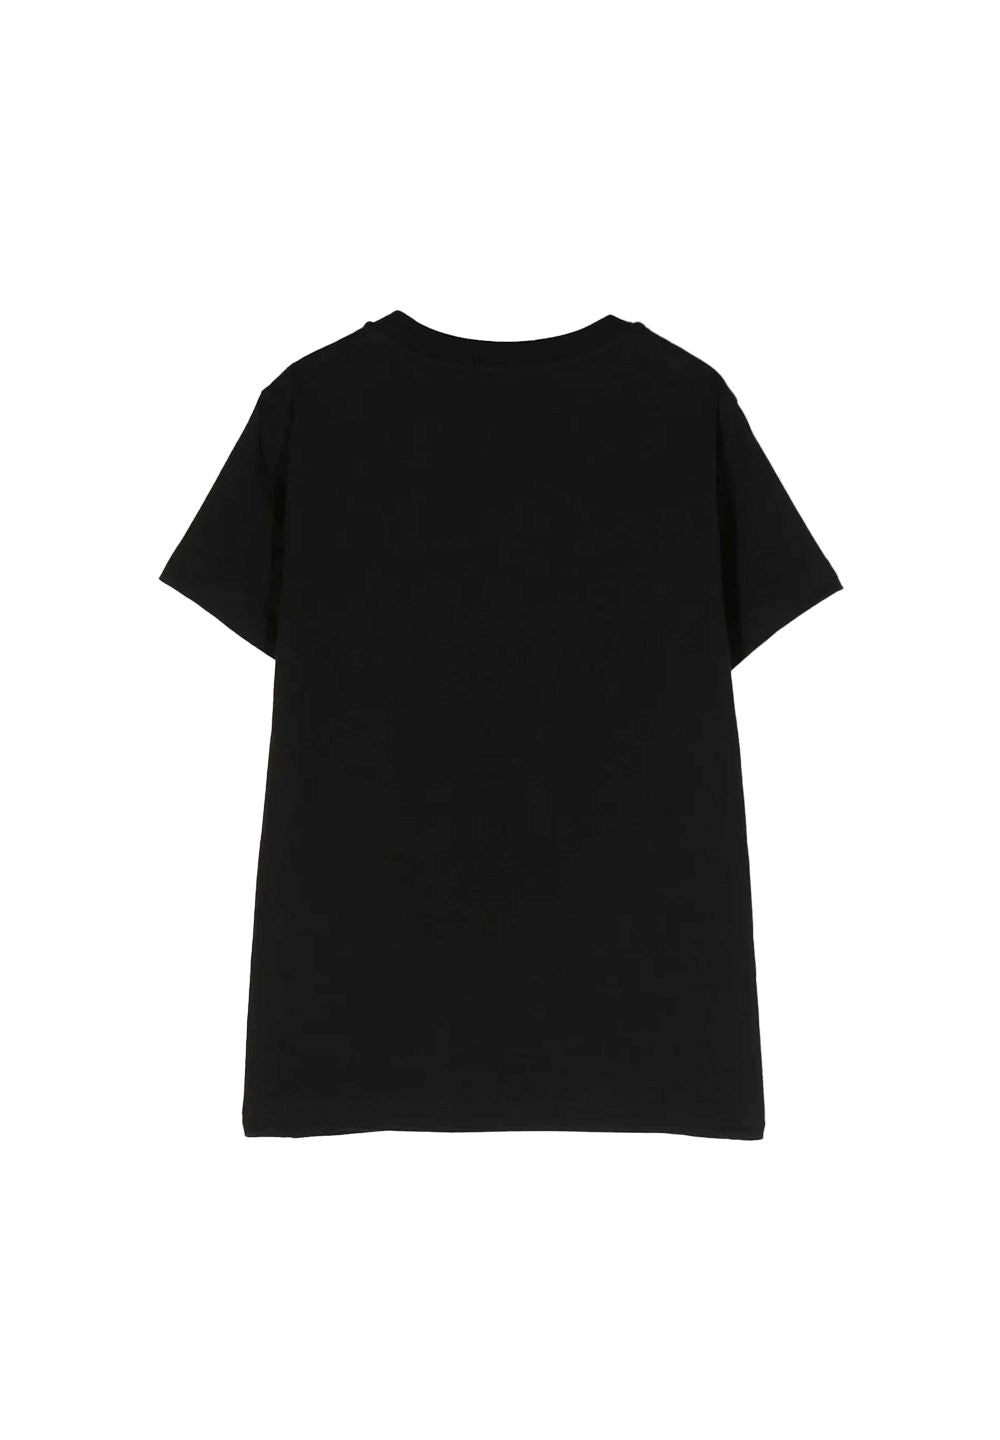 T-shirt nera per bambina